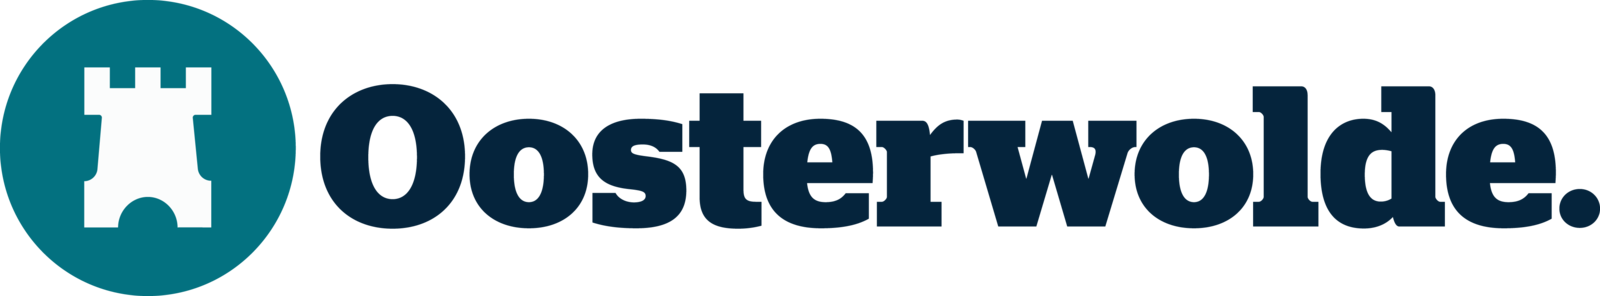 BusinessCenter Oosterwolde 